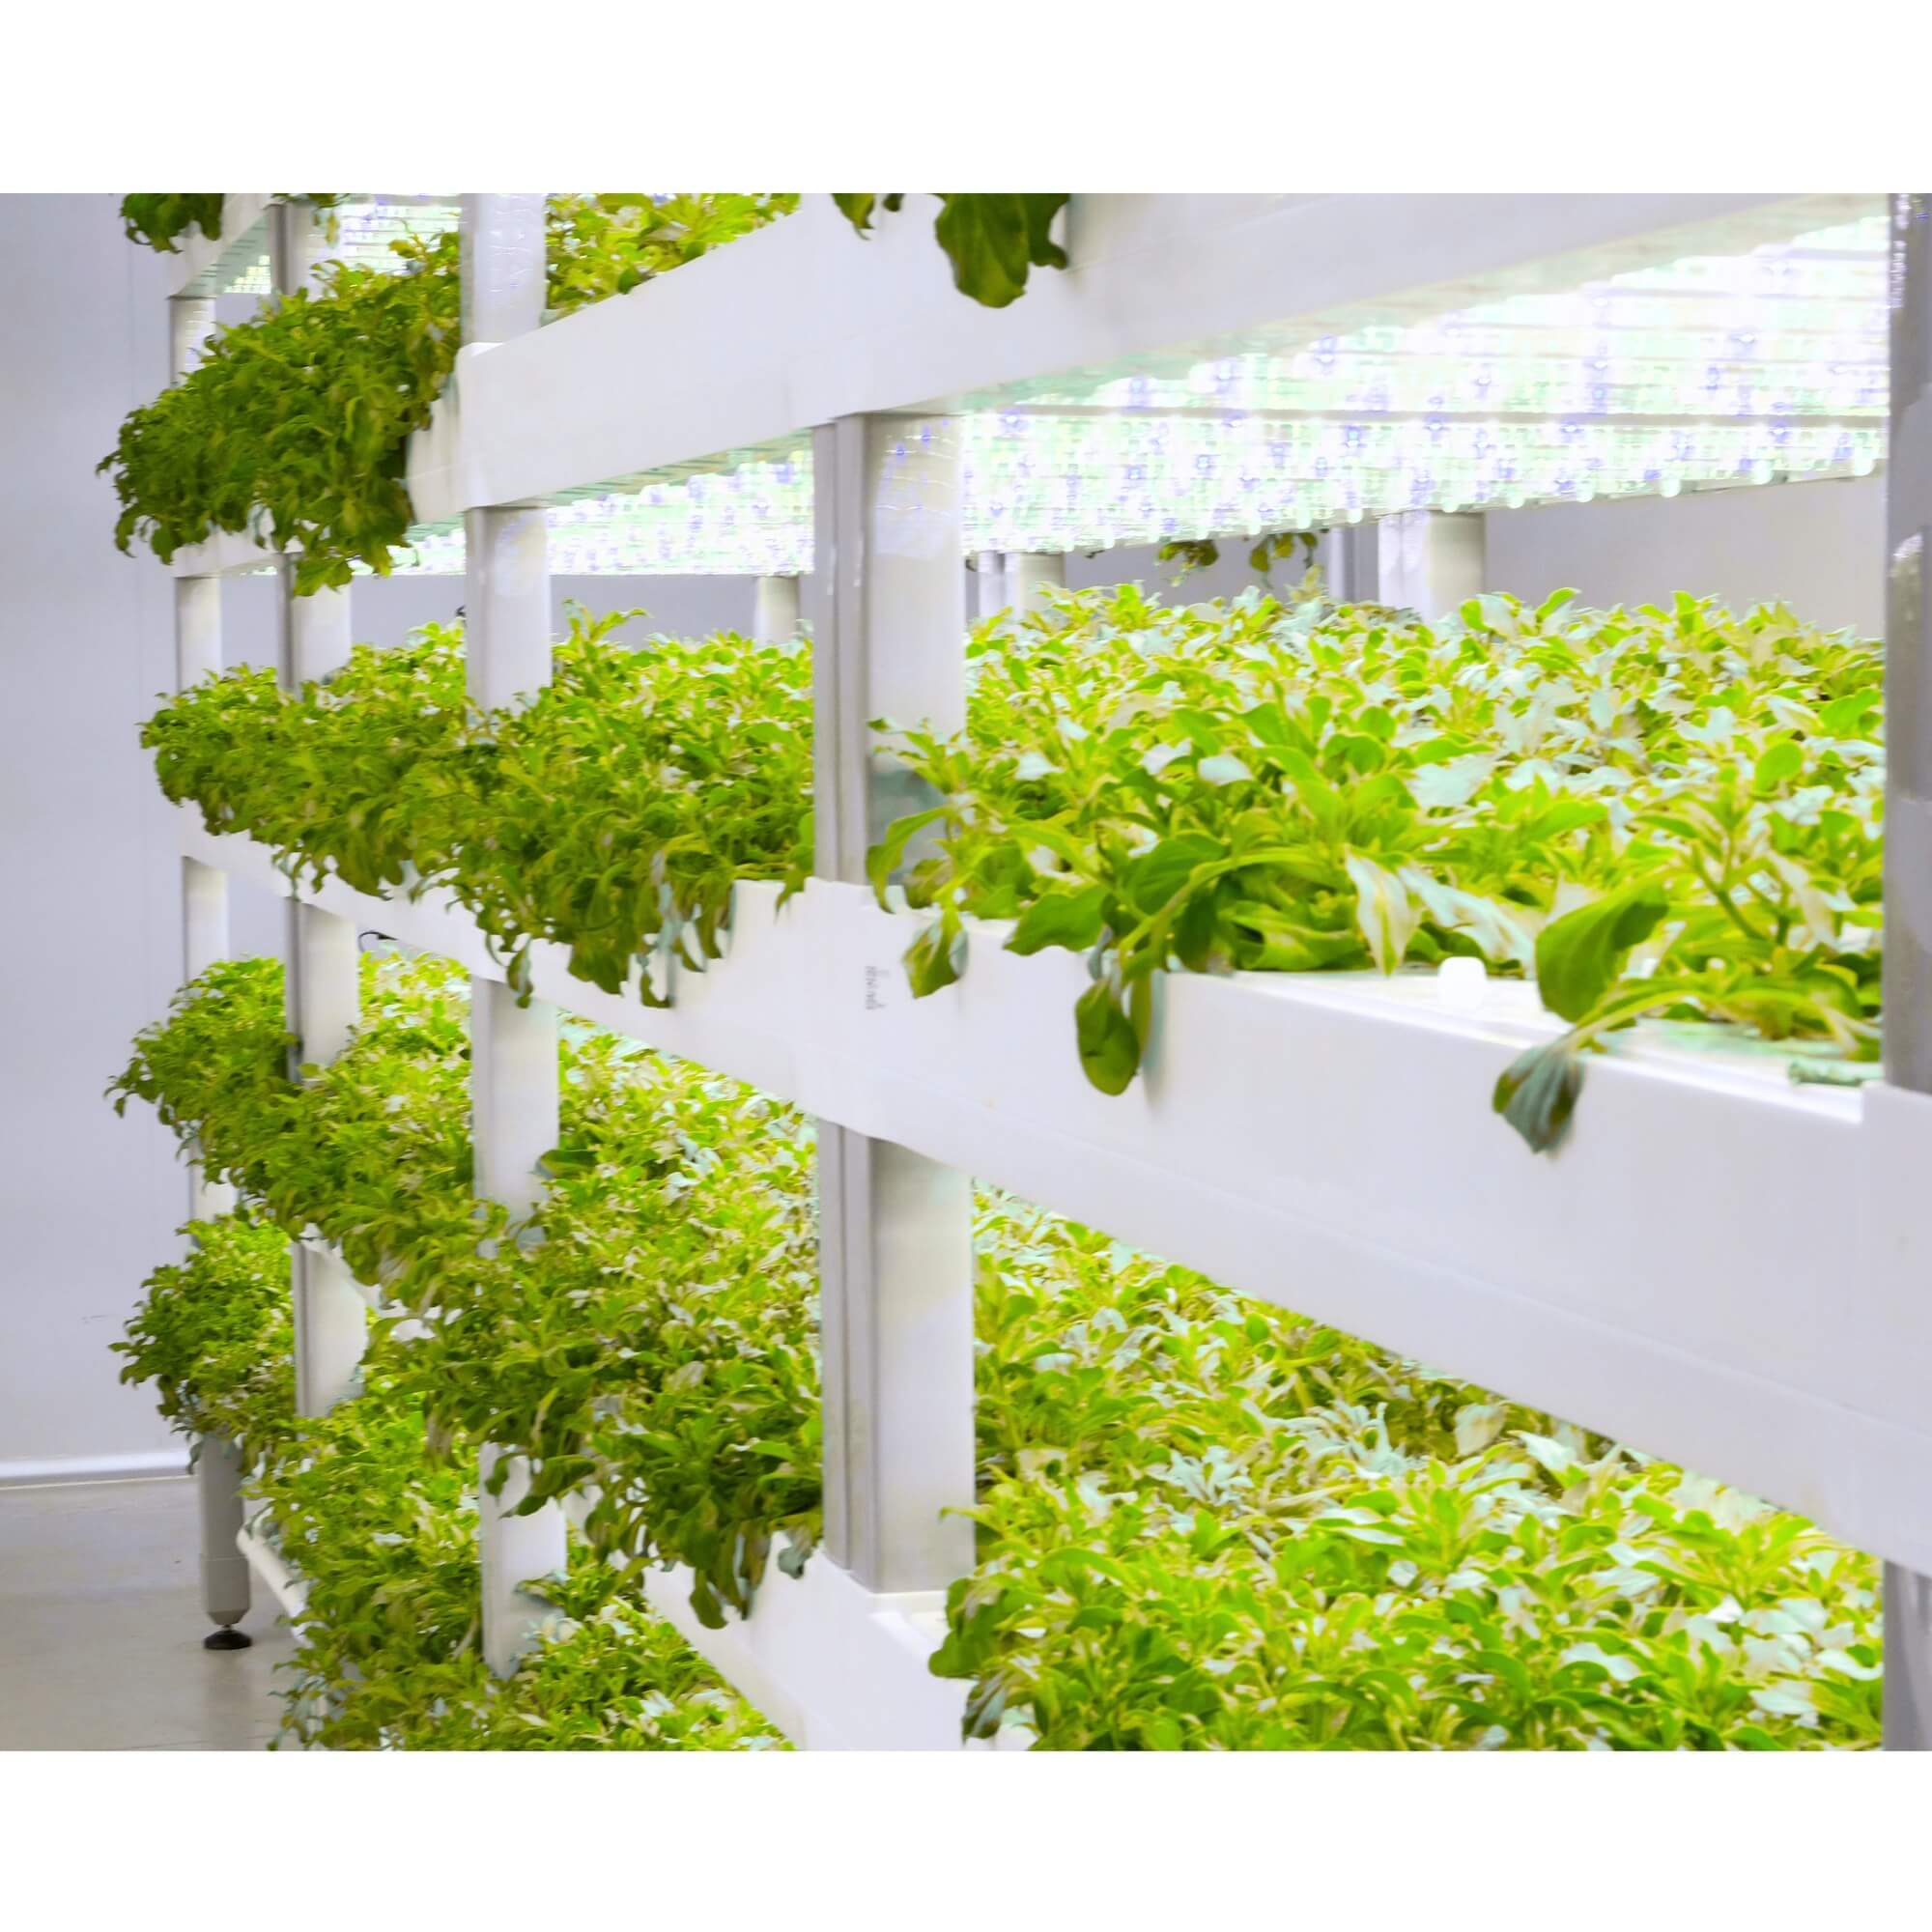 Indoor Hydroponic Garden Growing System - LumiArk